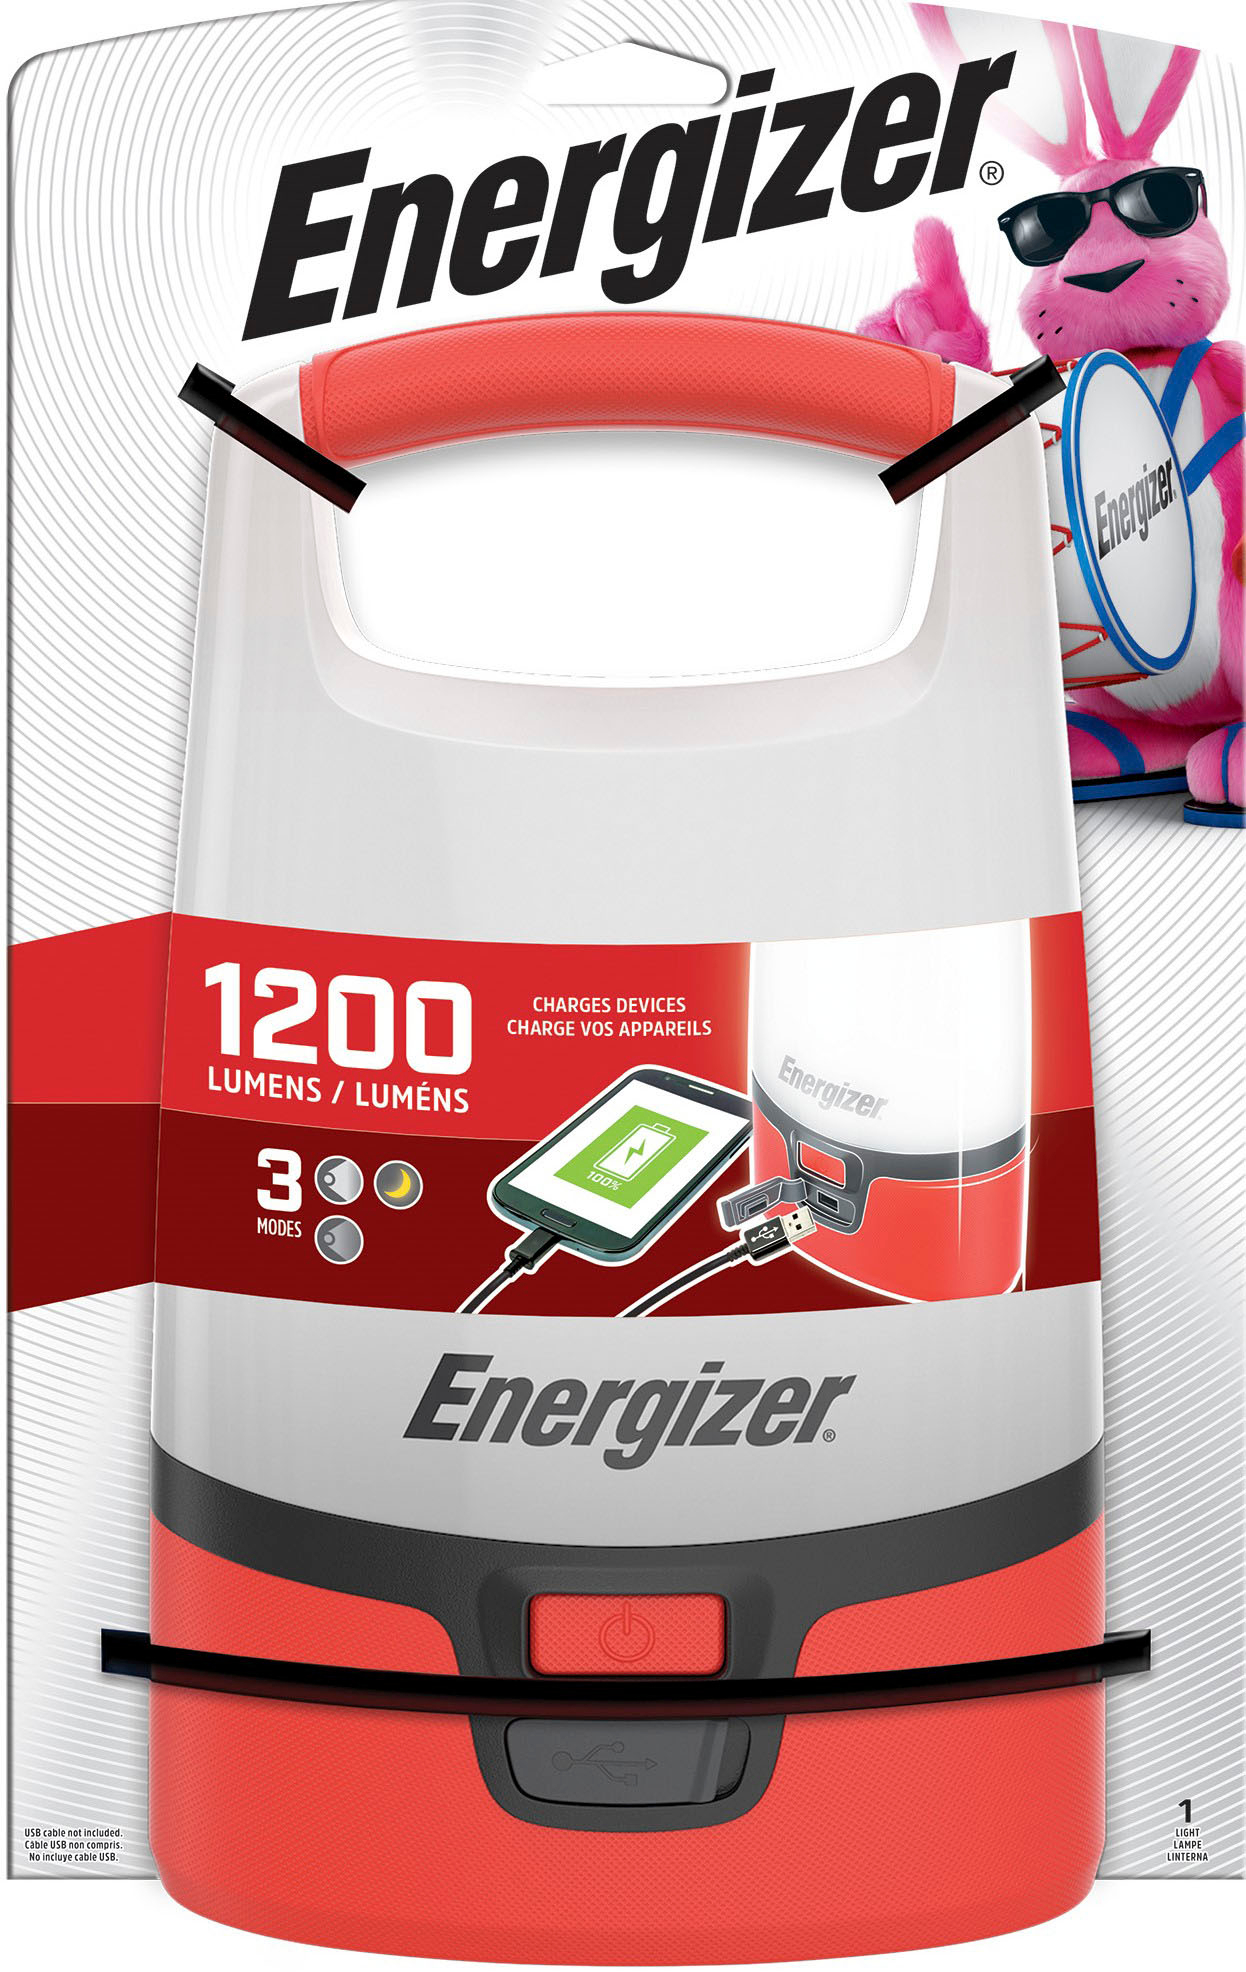 Energizer Red Camping Lanterns